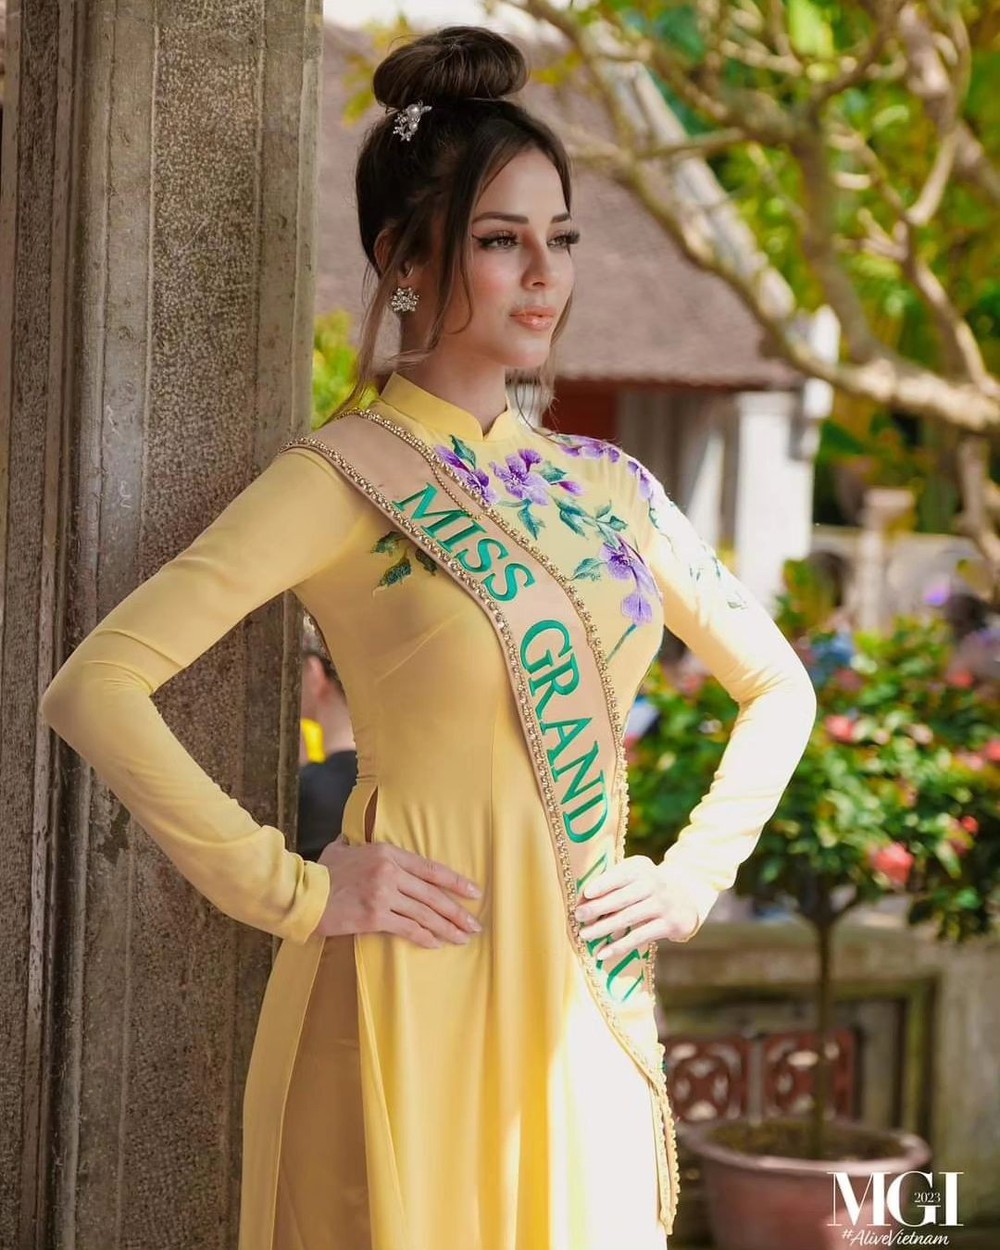 Nhan sắc người đẹp có 4,6 triệu lượt theo dõi đăng quang hoa hậu ở Việt Nam - Ảnh 10.